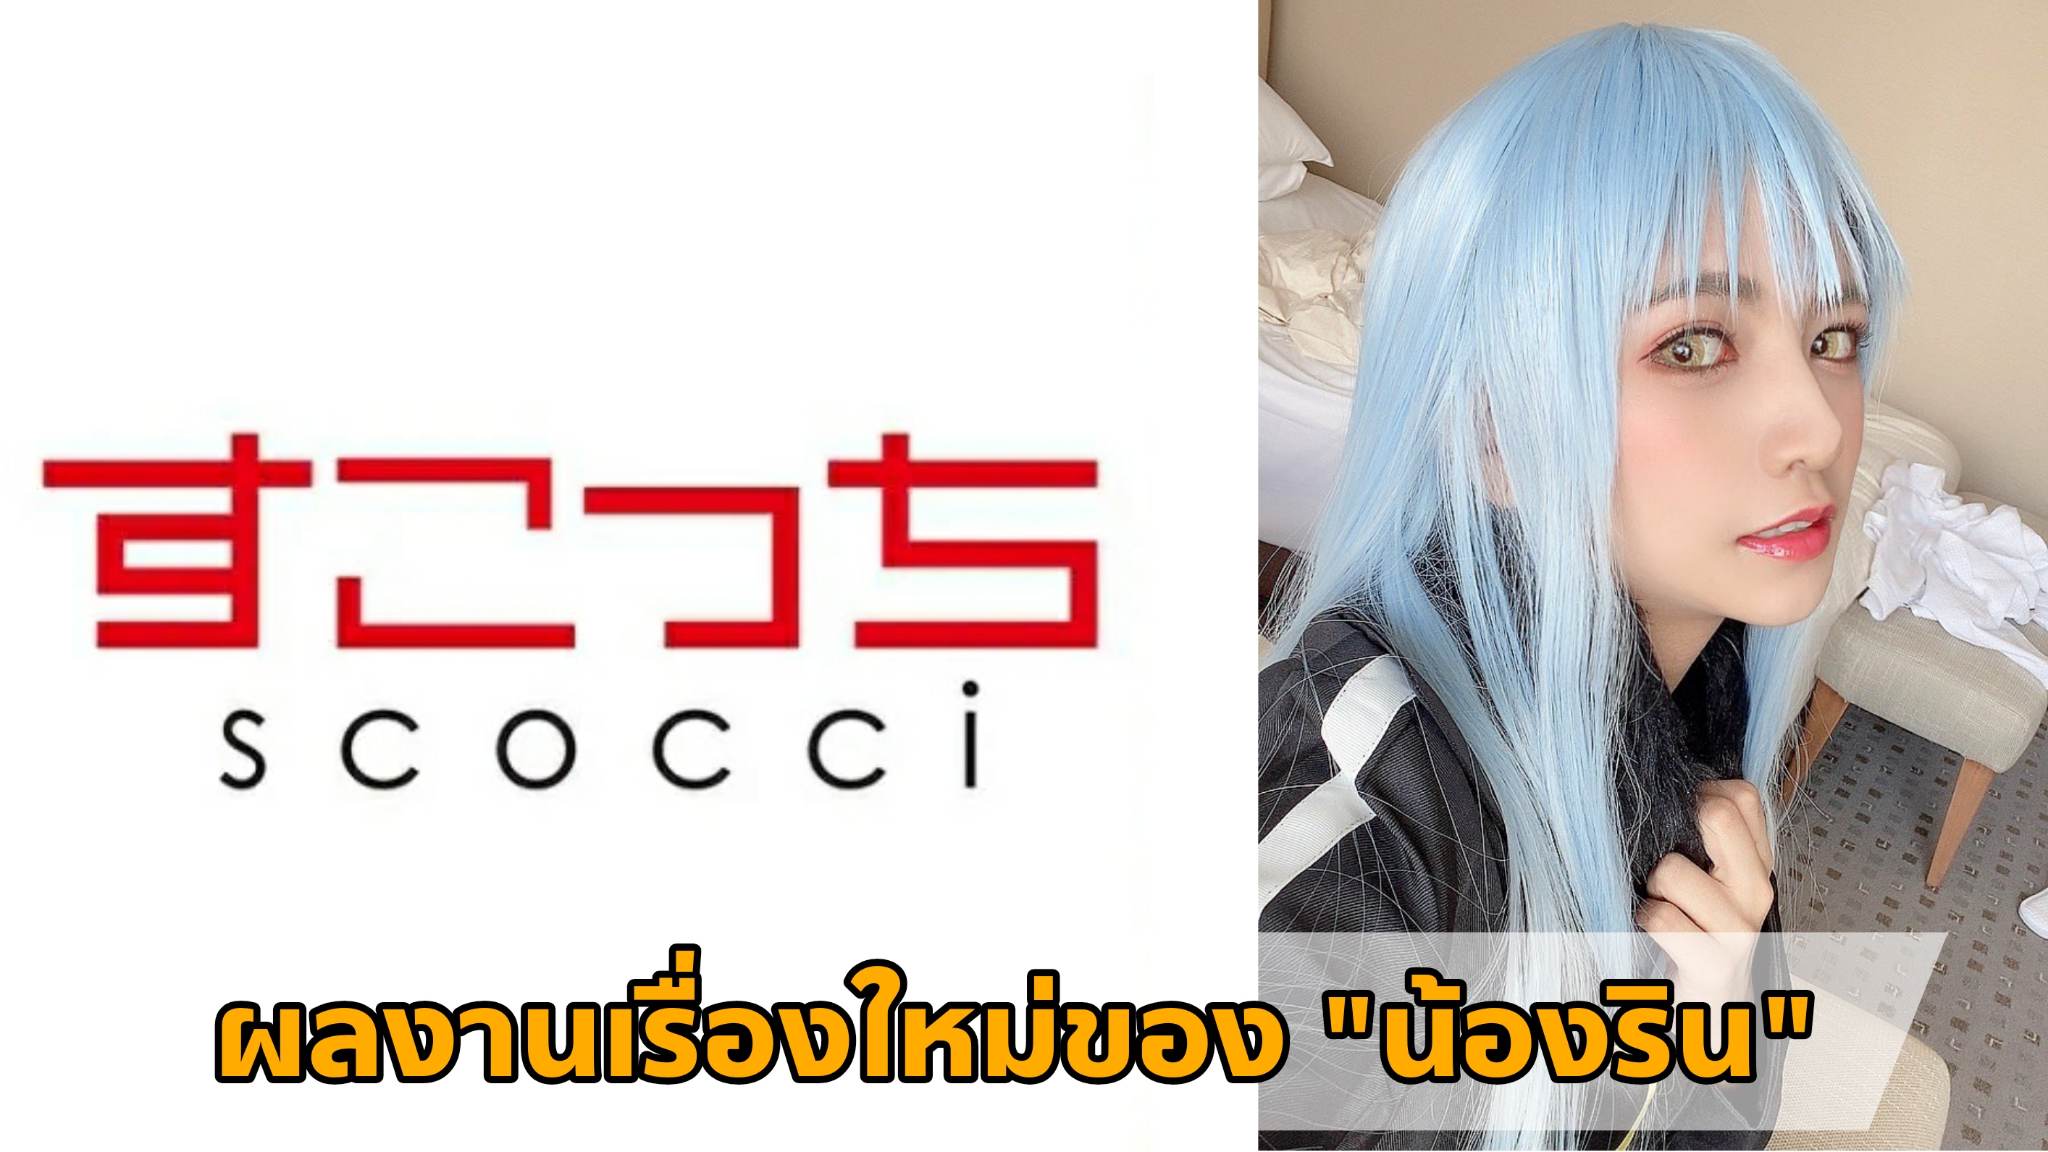 [SCOH-105] ผลงานเรื่องใหม่ของ "น้องริน" (Rin Miyazaki) Cosplay เป็น "ท่านริมุรุ" 8